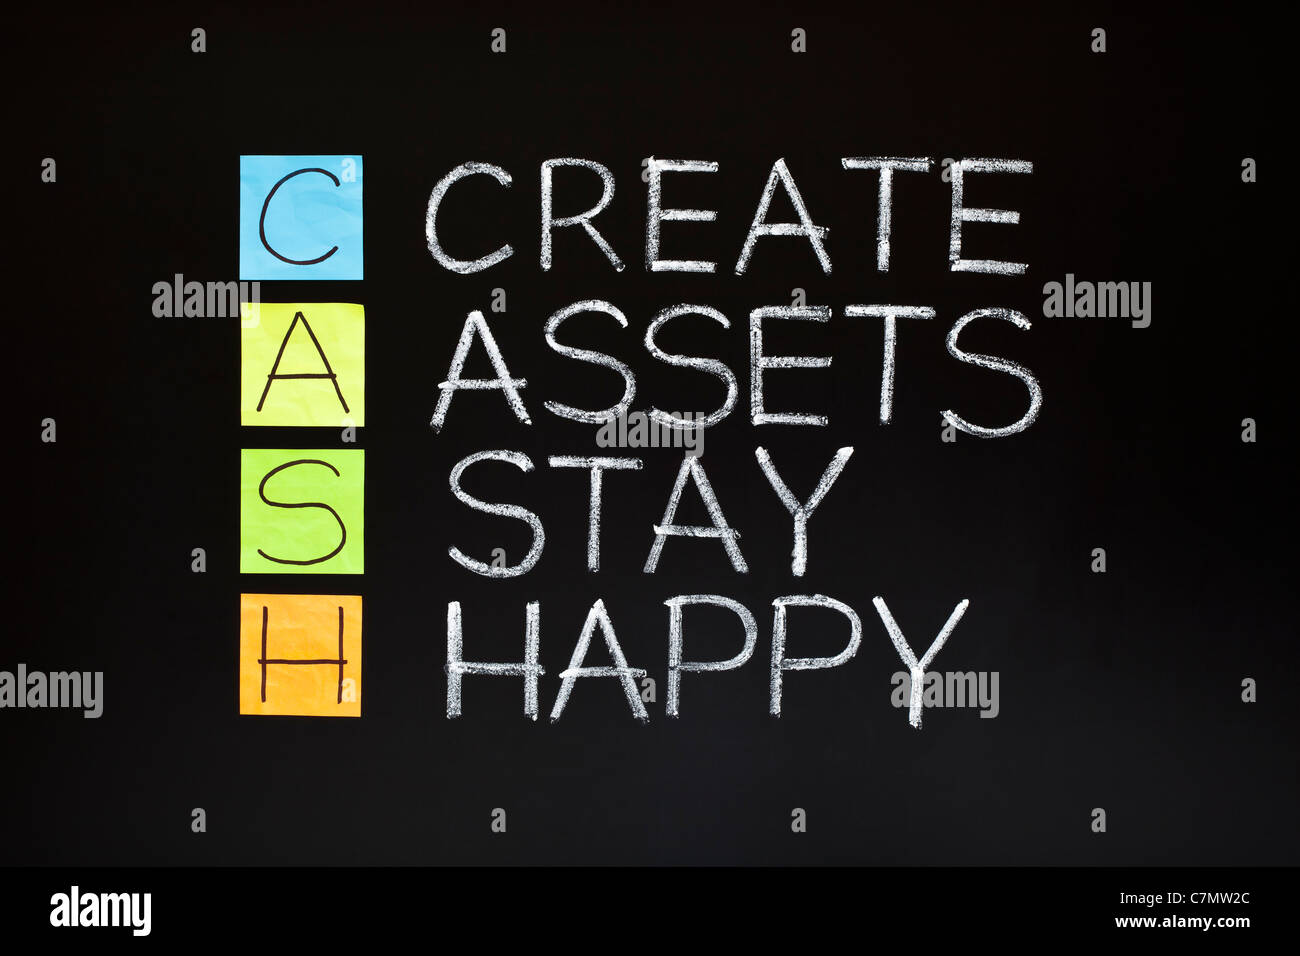 CASH-Akronym - erstellen Vermögenswerte bleiben glücklich gemacht mit Haftnotizen und weiße Kreide auf einer Tafel. Stockfoto